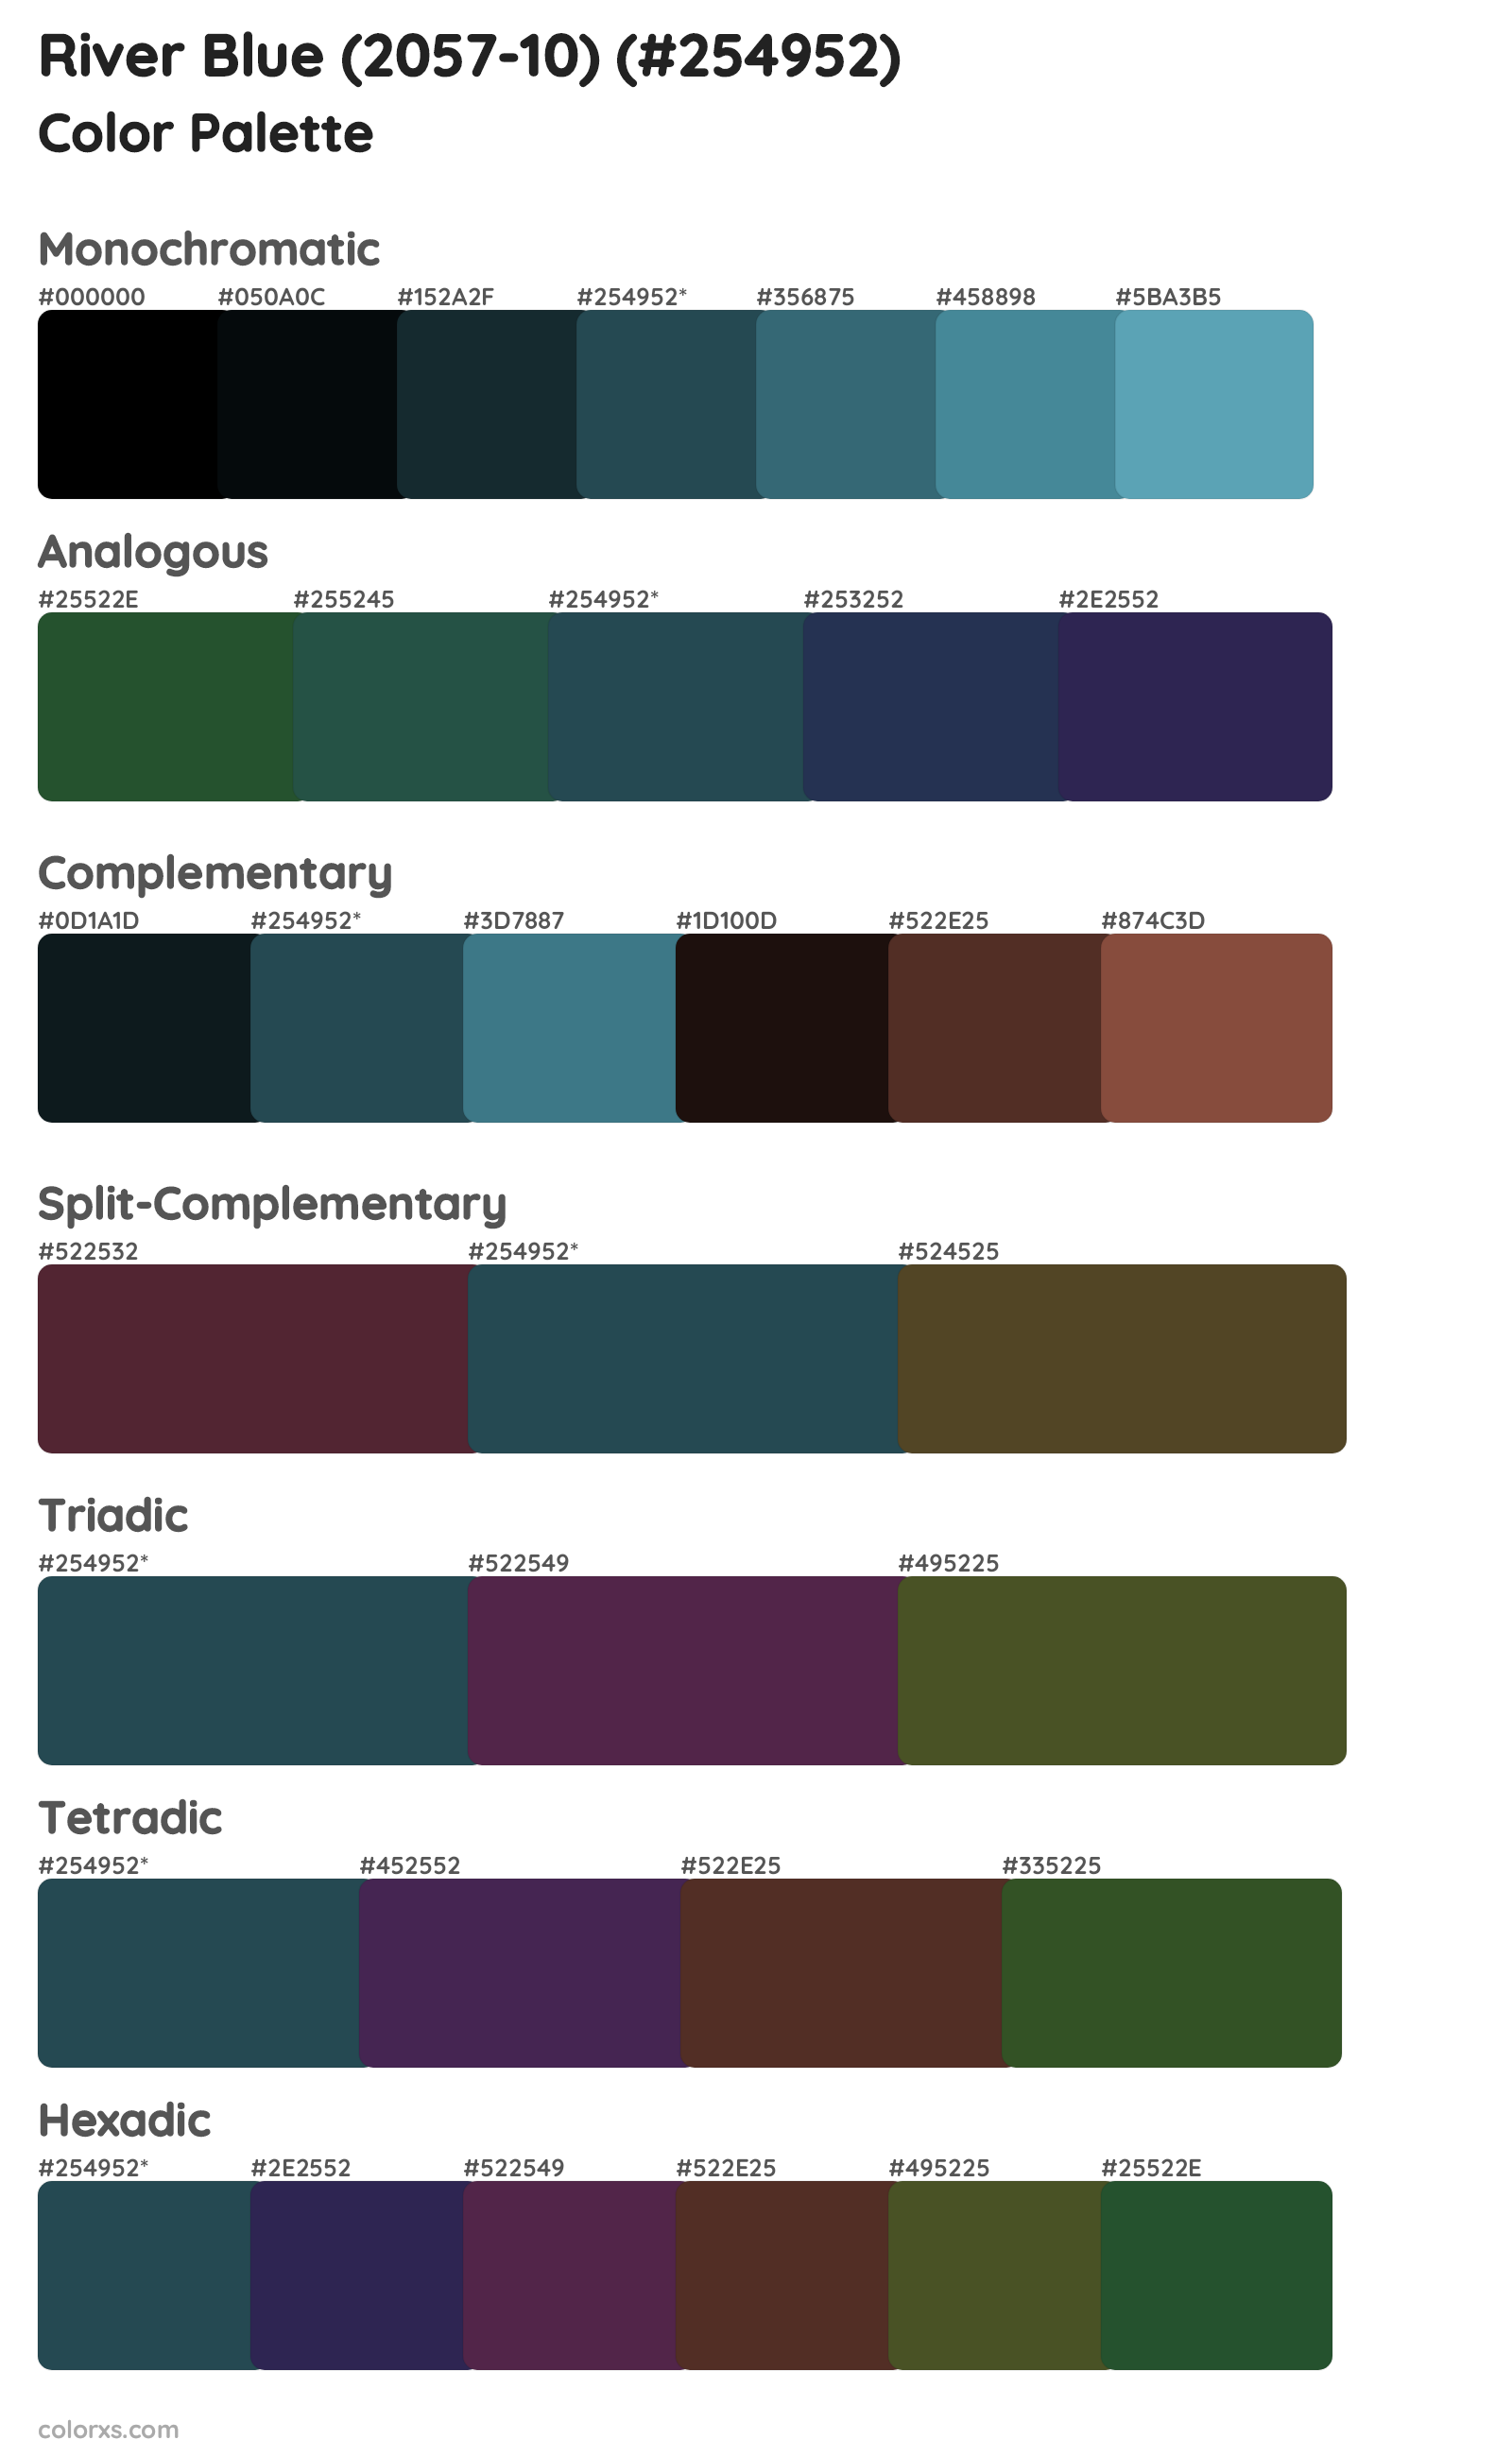 River Blue (2057-10) Color Scheme Palettes